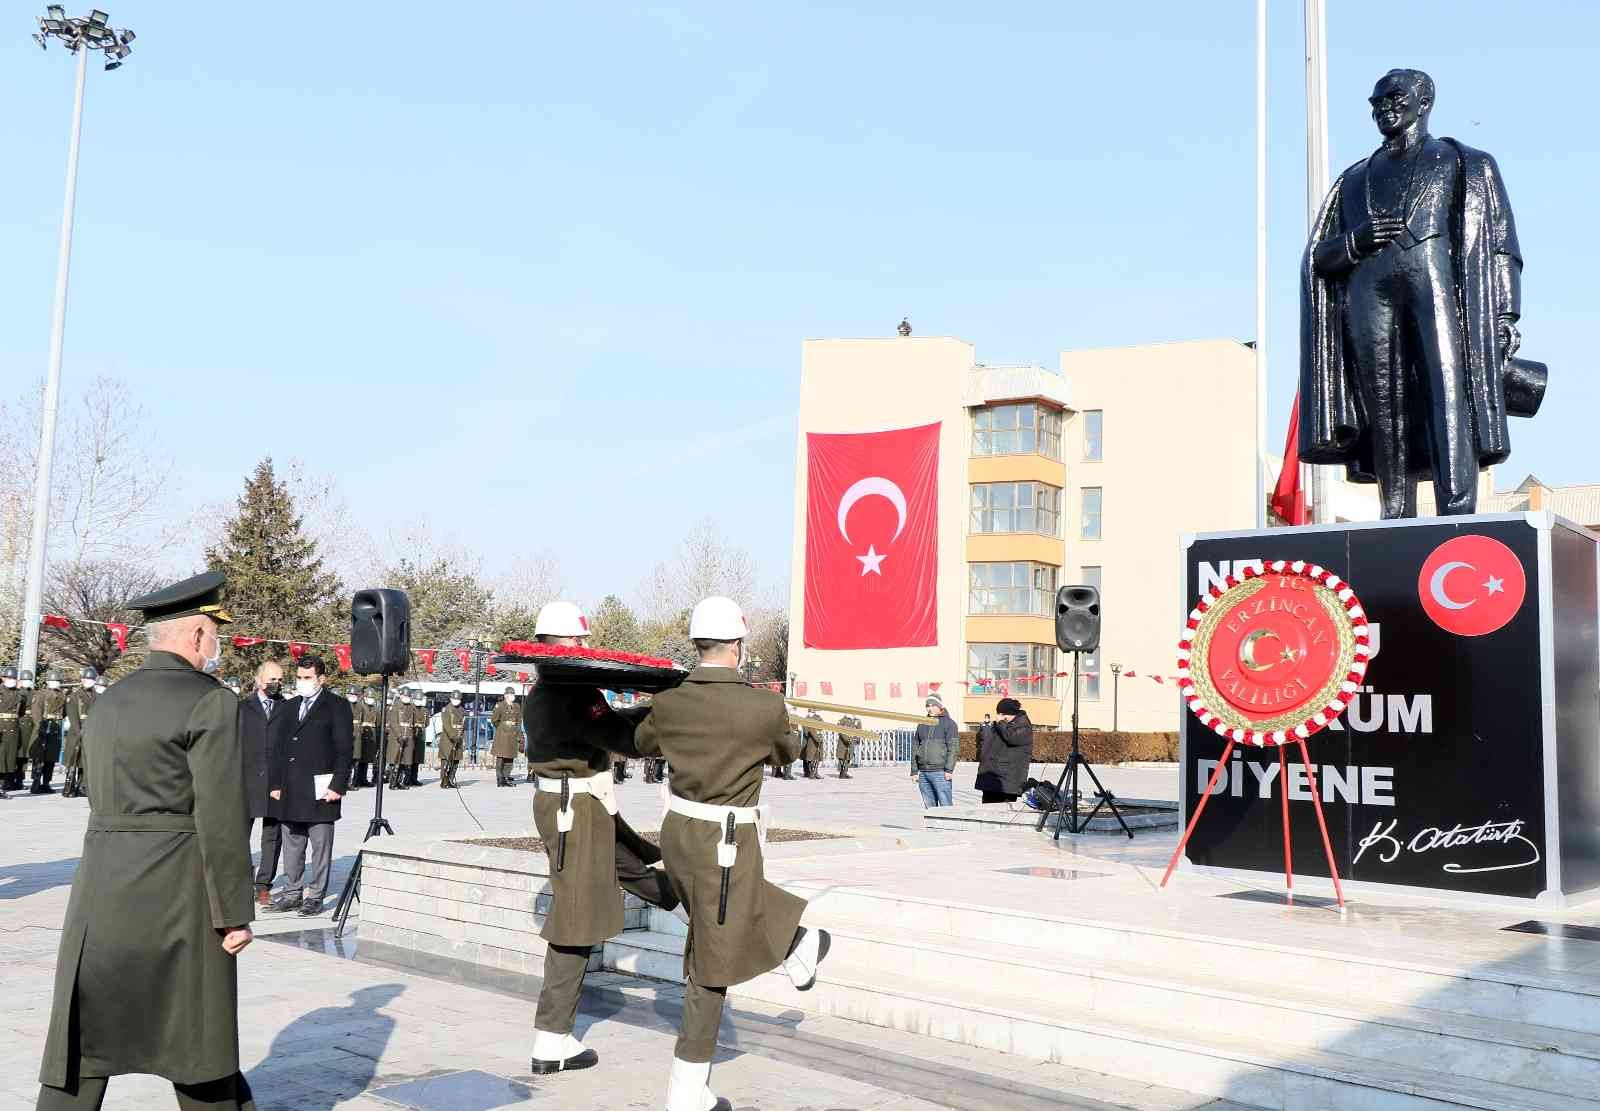 Erzincan’ın düşman işgalinden kurtuluşunun 104’ncü yıldönümü coşkuyla kutlandı #erzincan